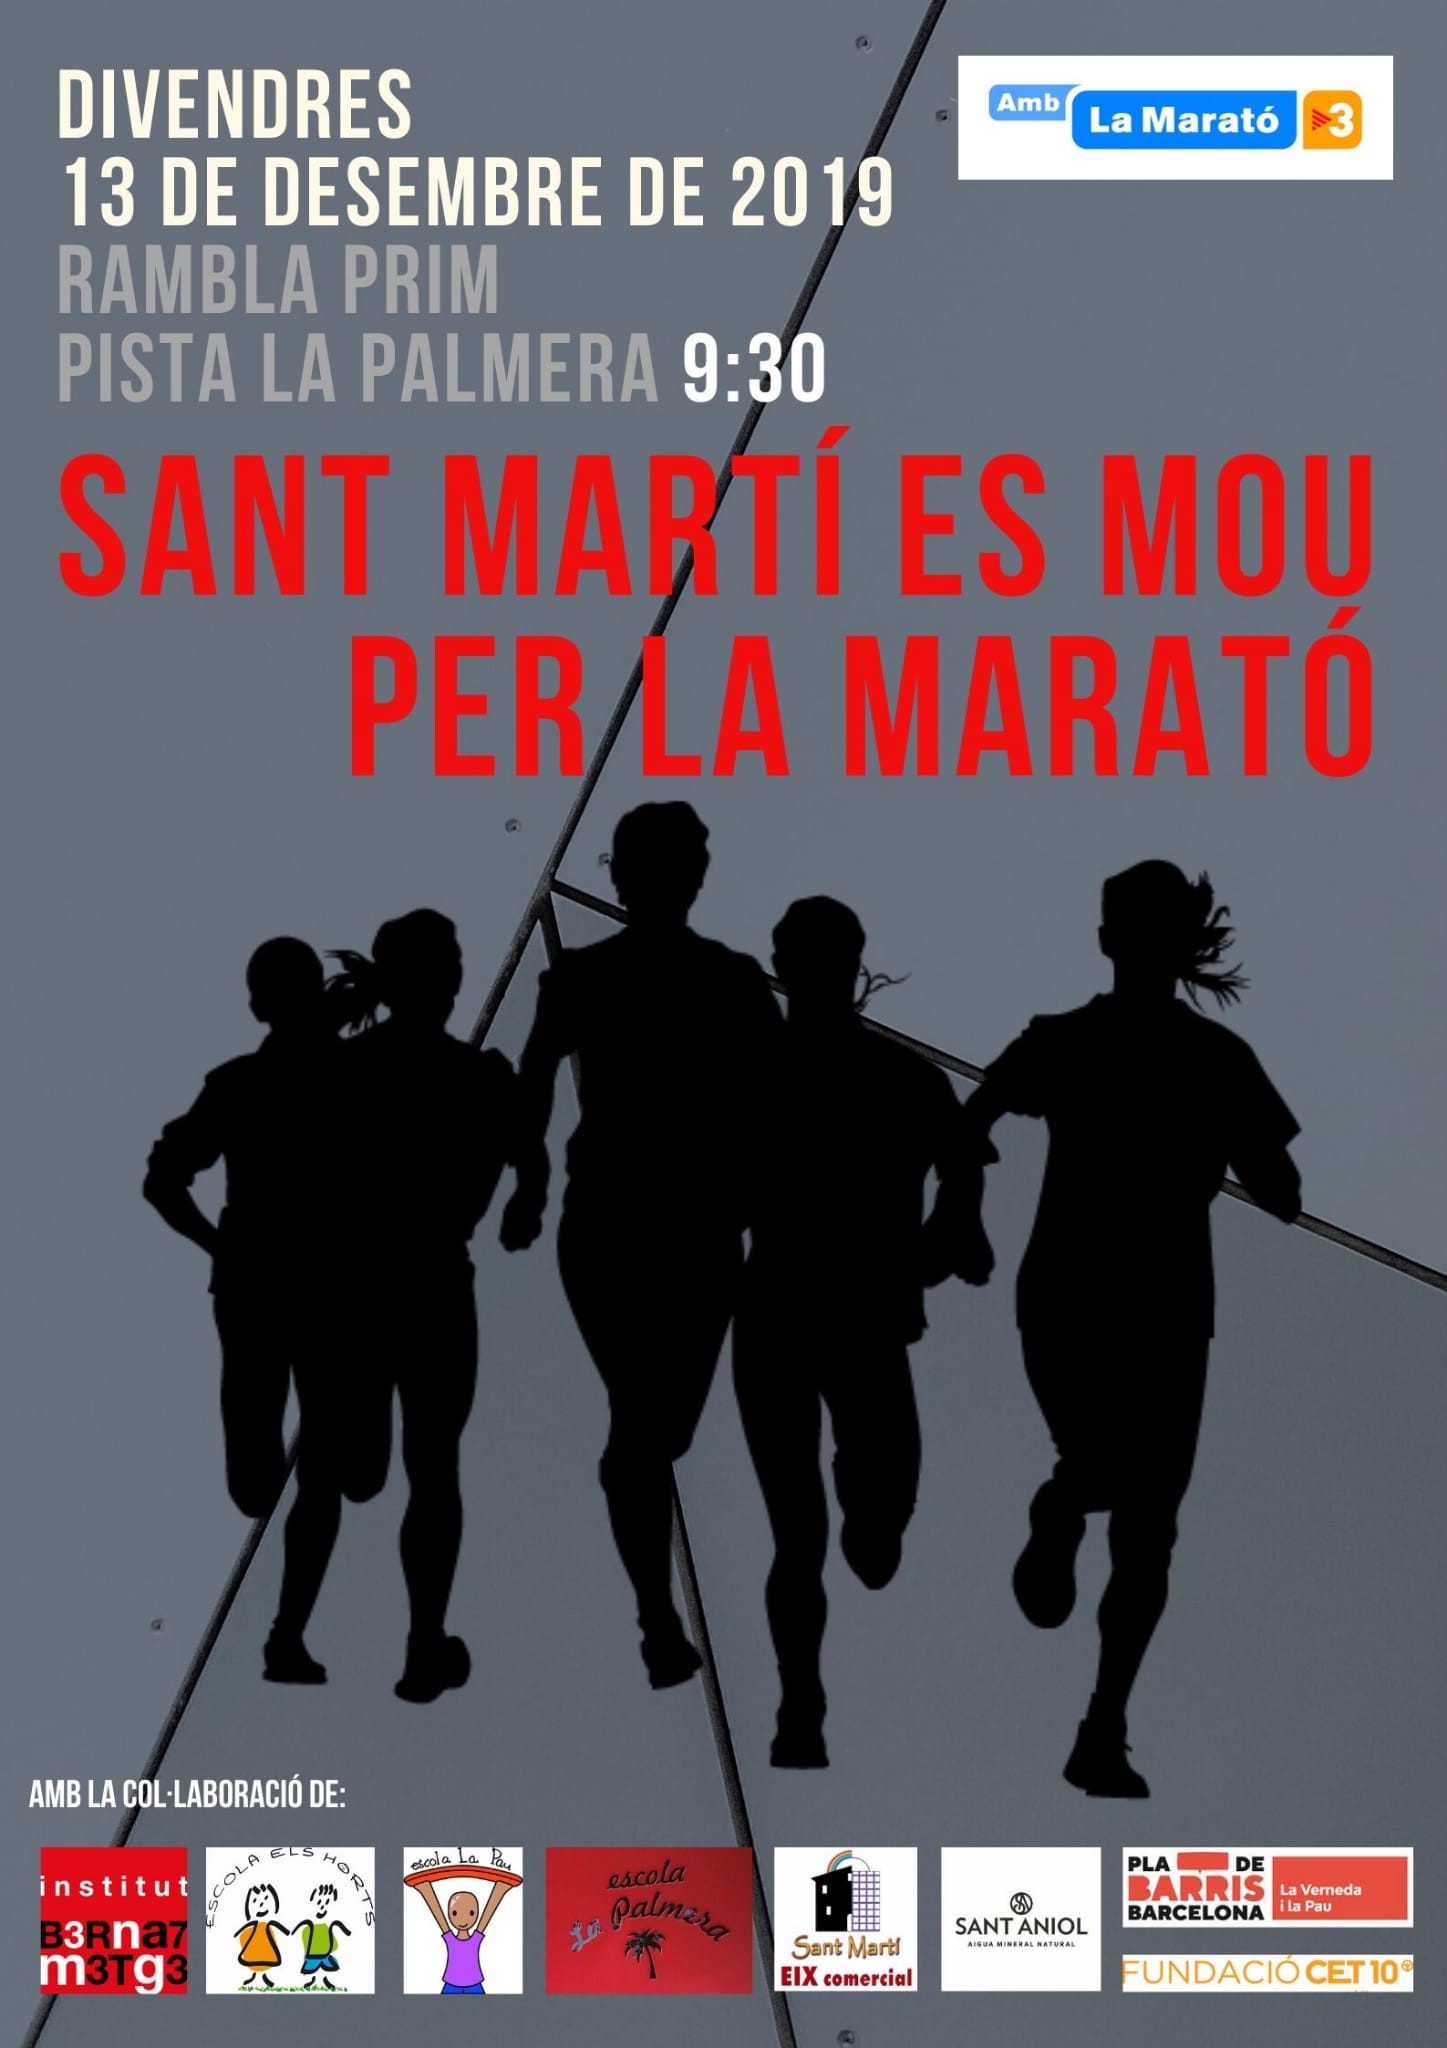 Sant Martí es mou per La Marató